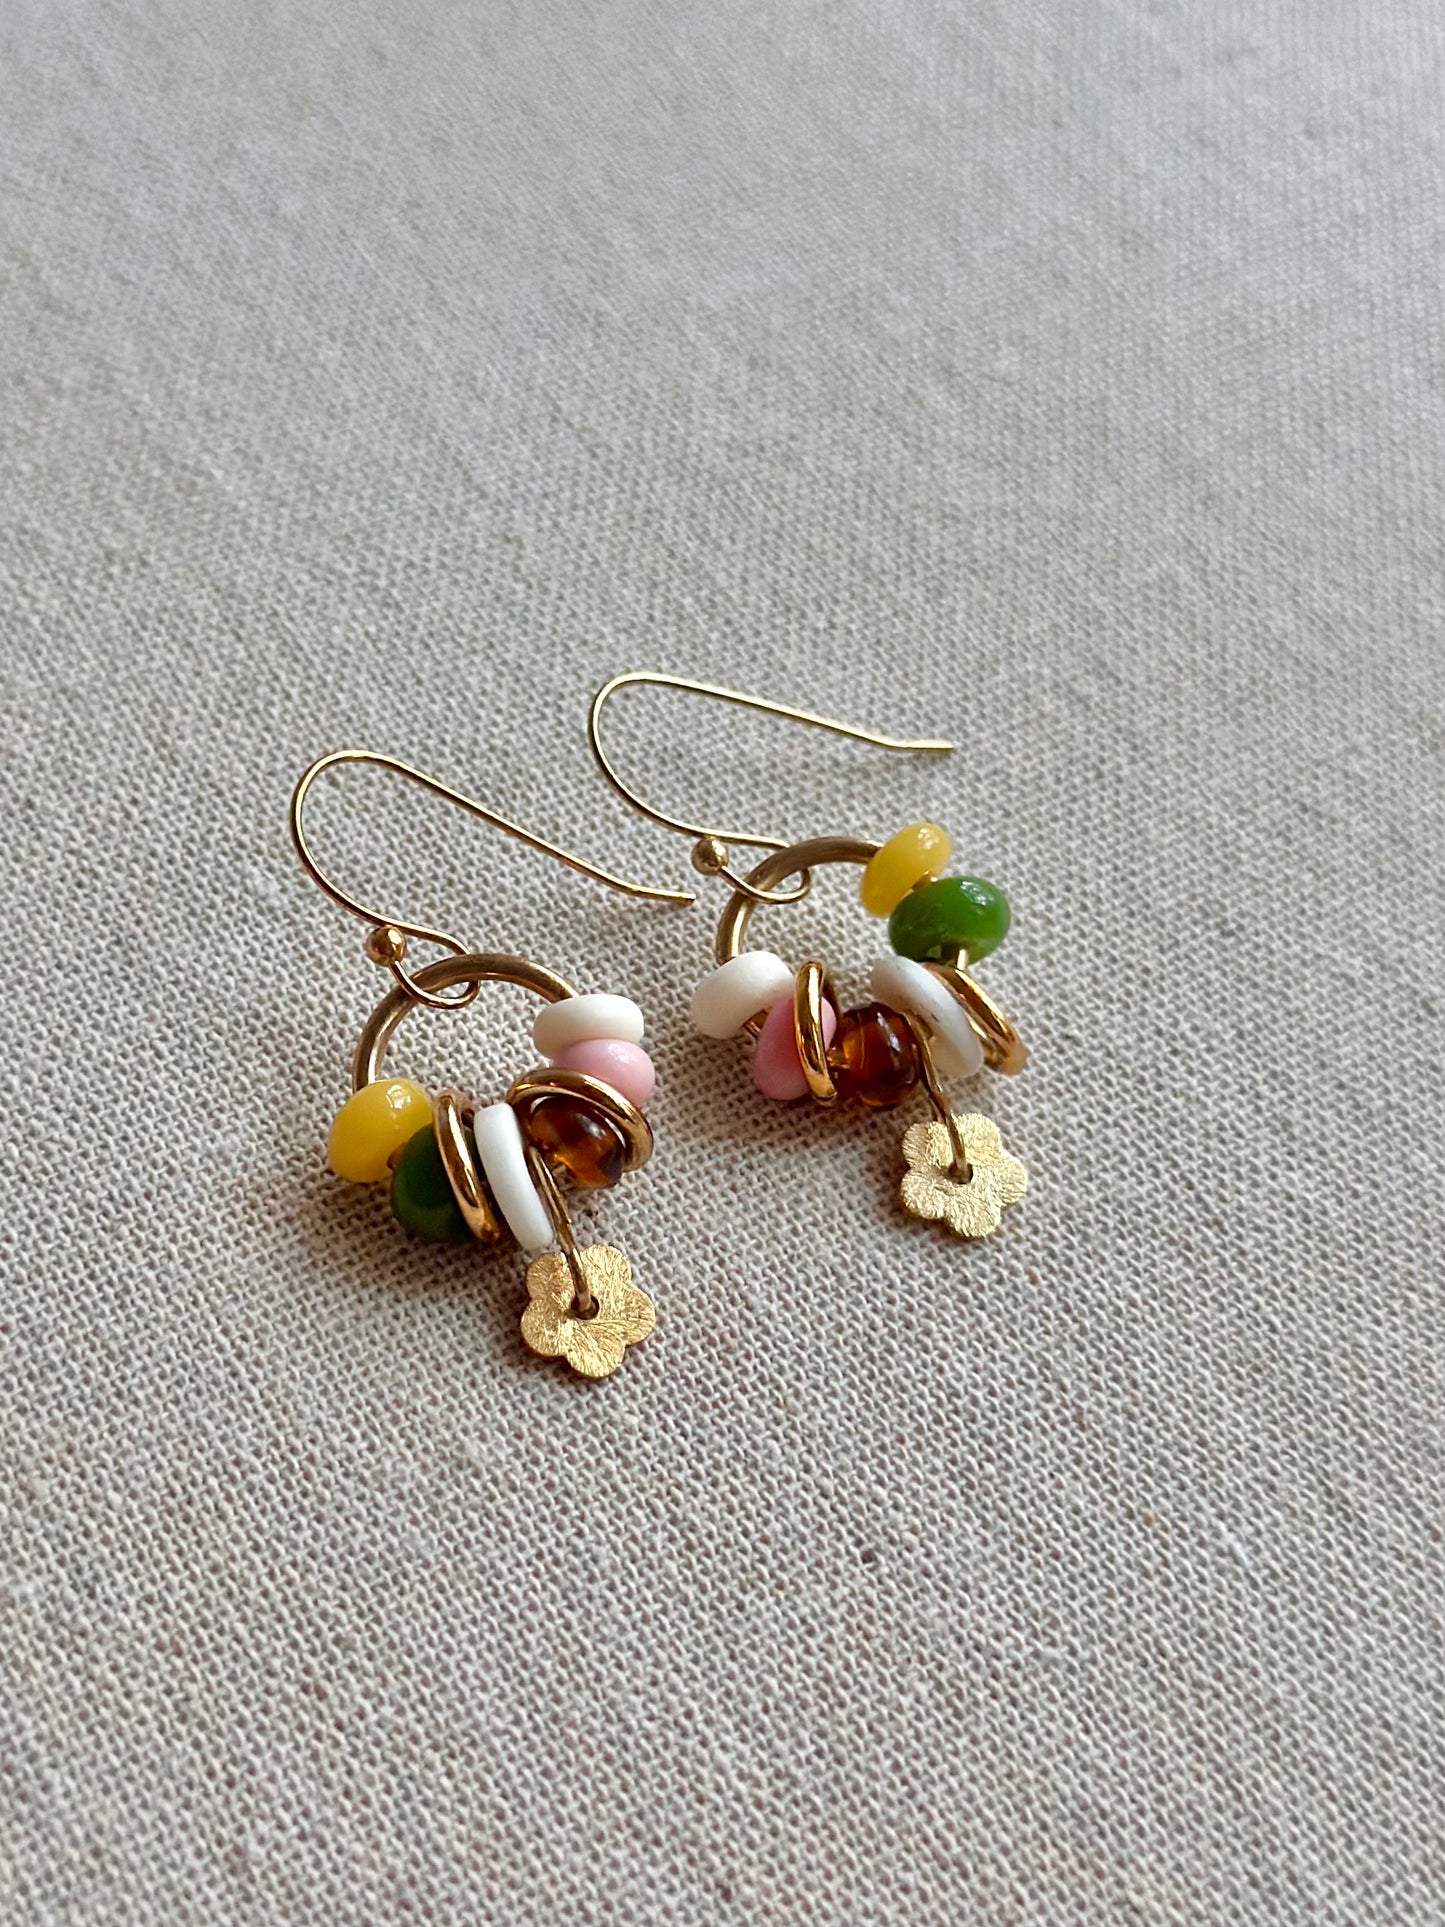 Daisy earrings in autumnal tones